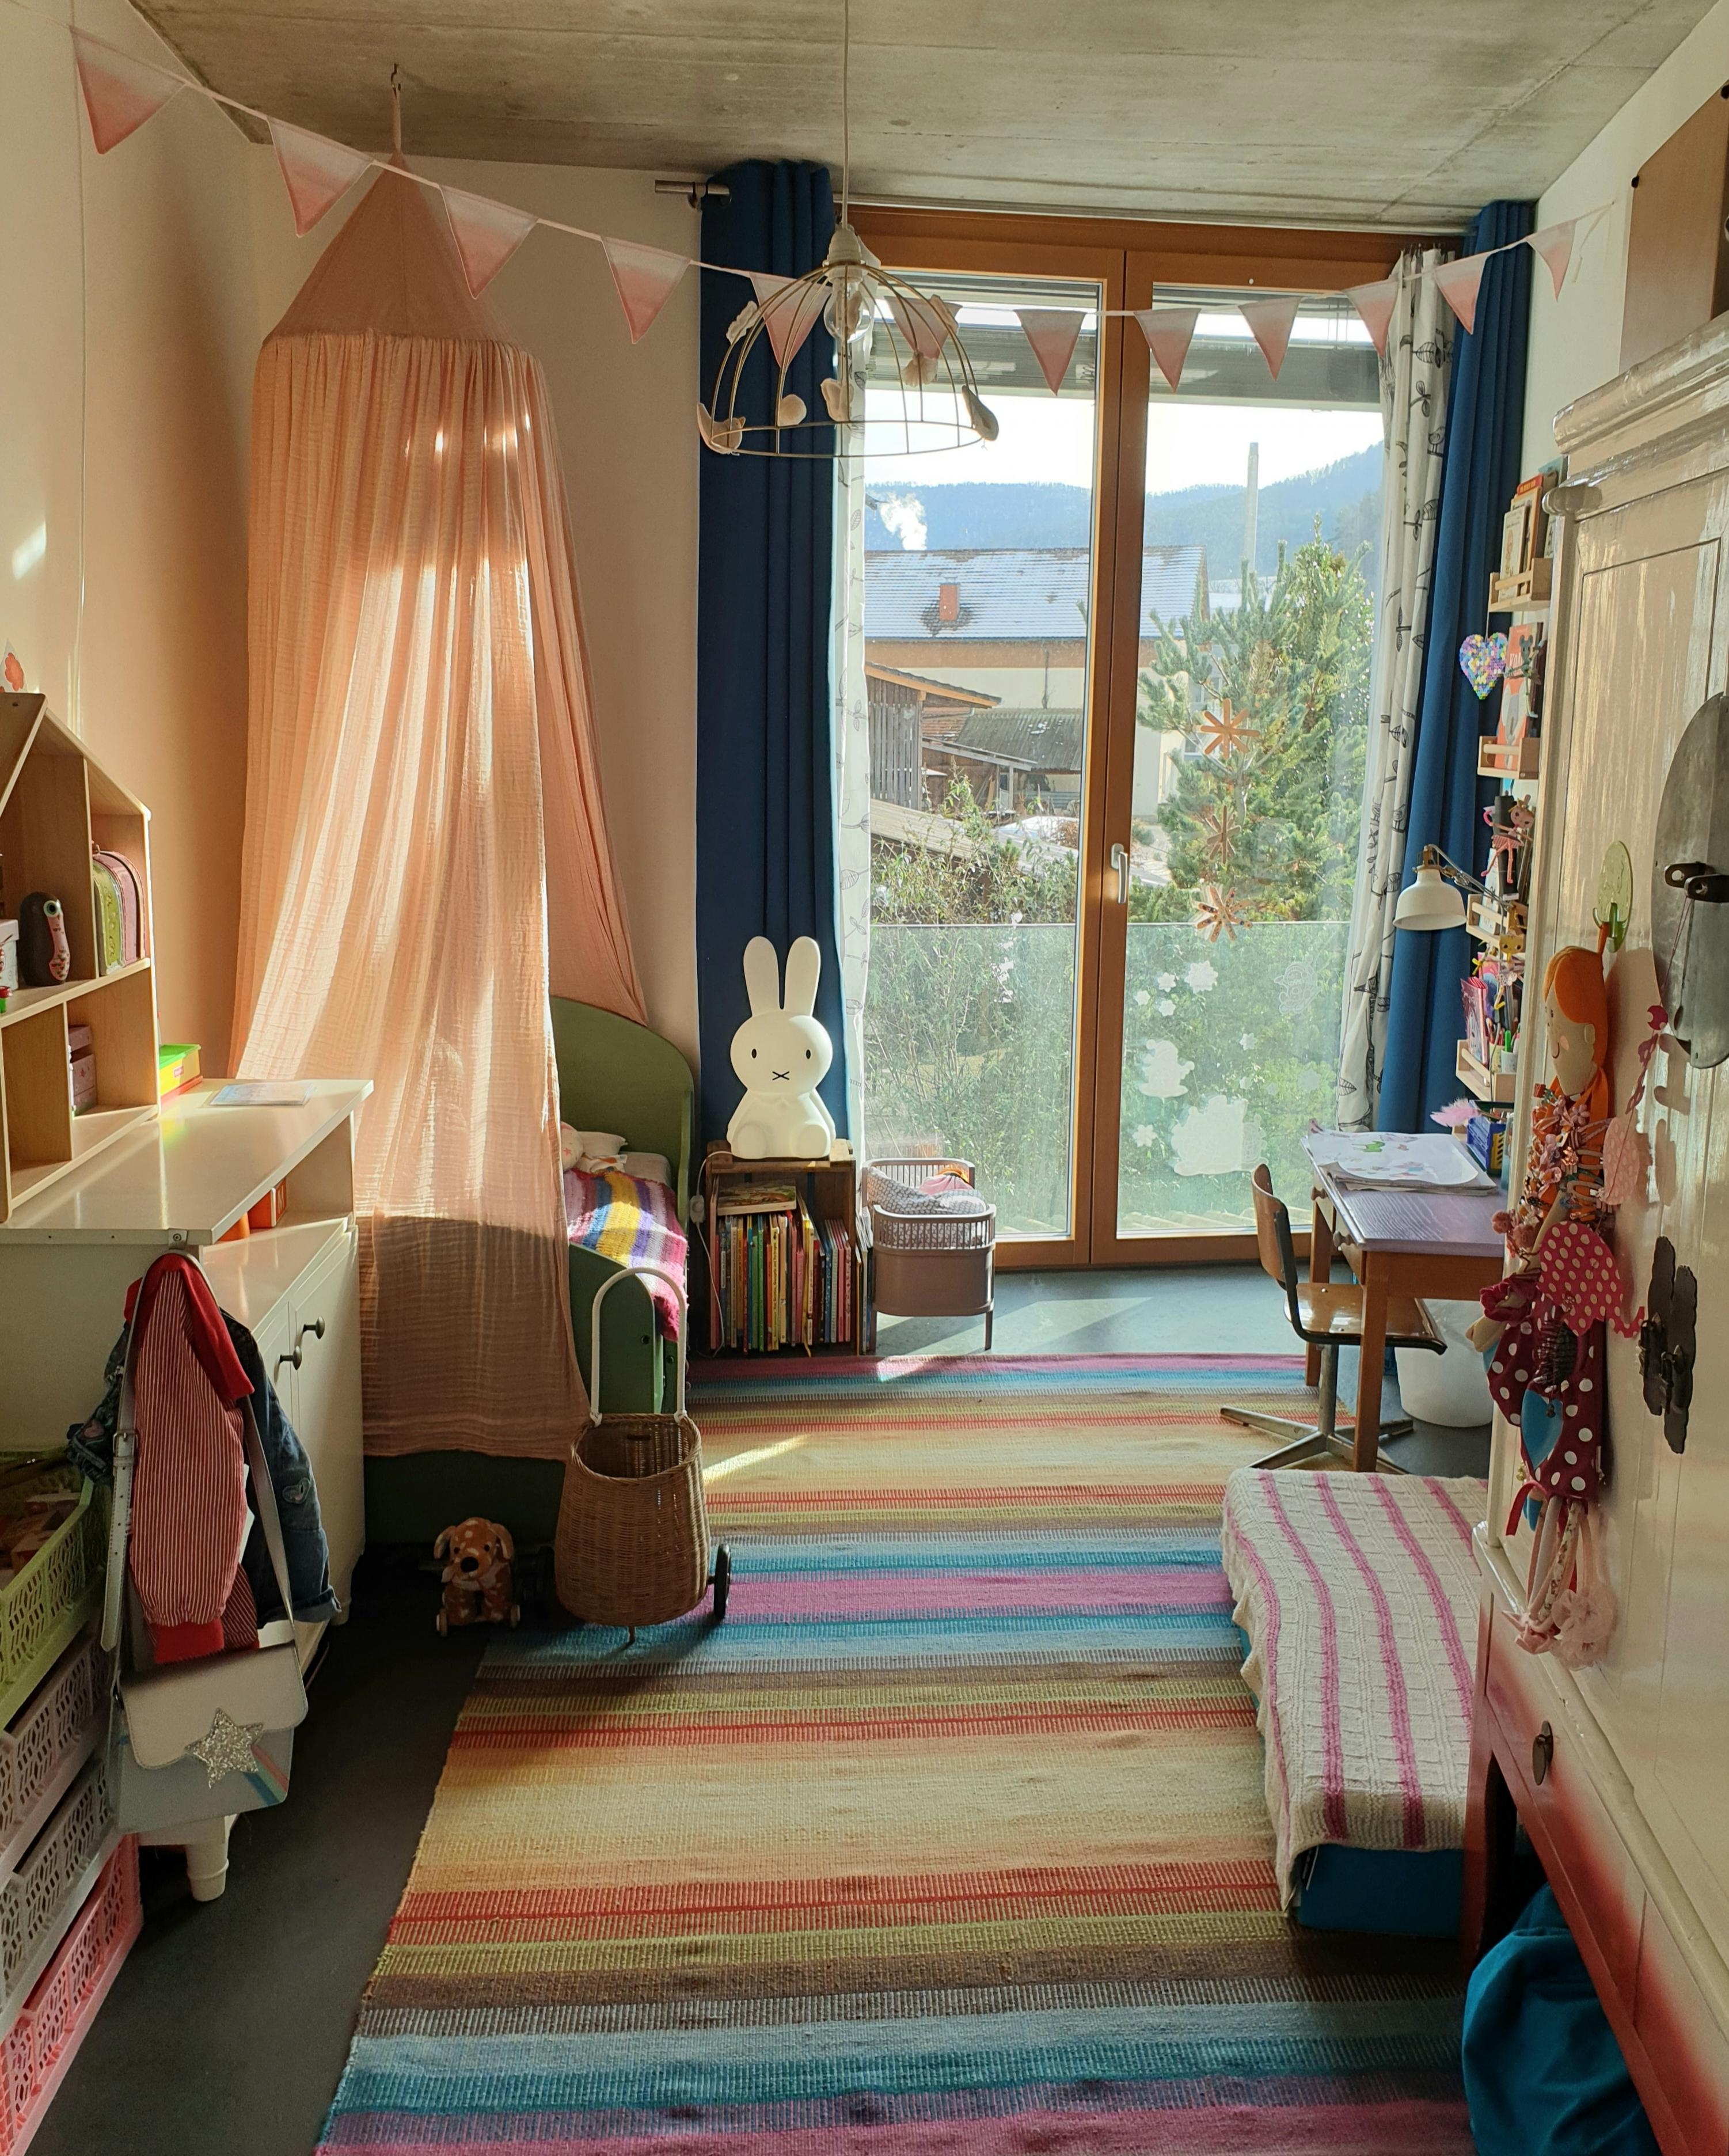 Lass die Sonne rein
#Kinderzimmer#kleinesKinderzimmer#bunt